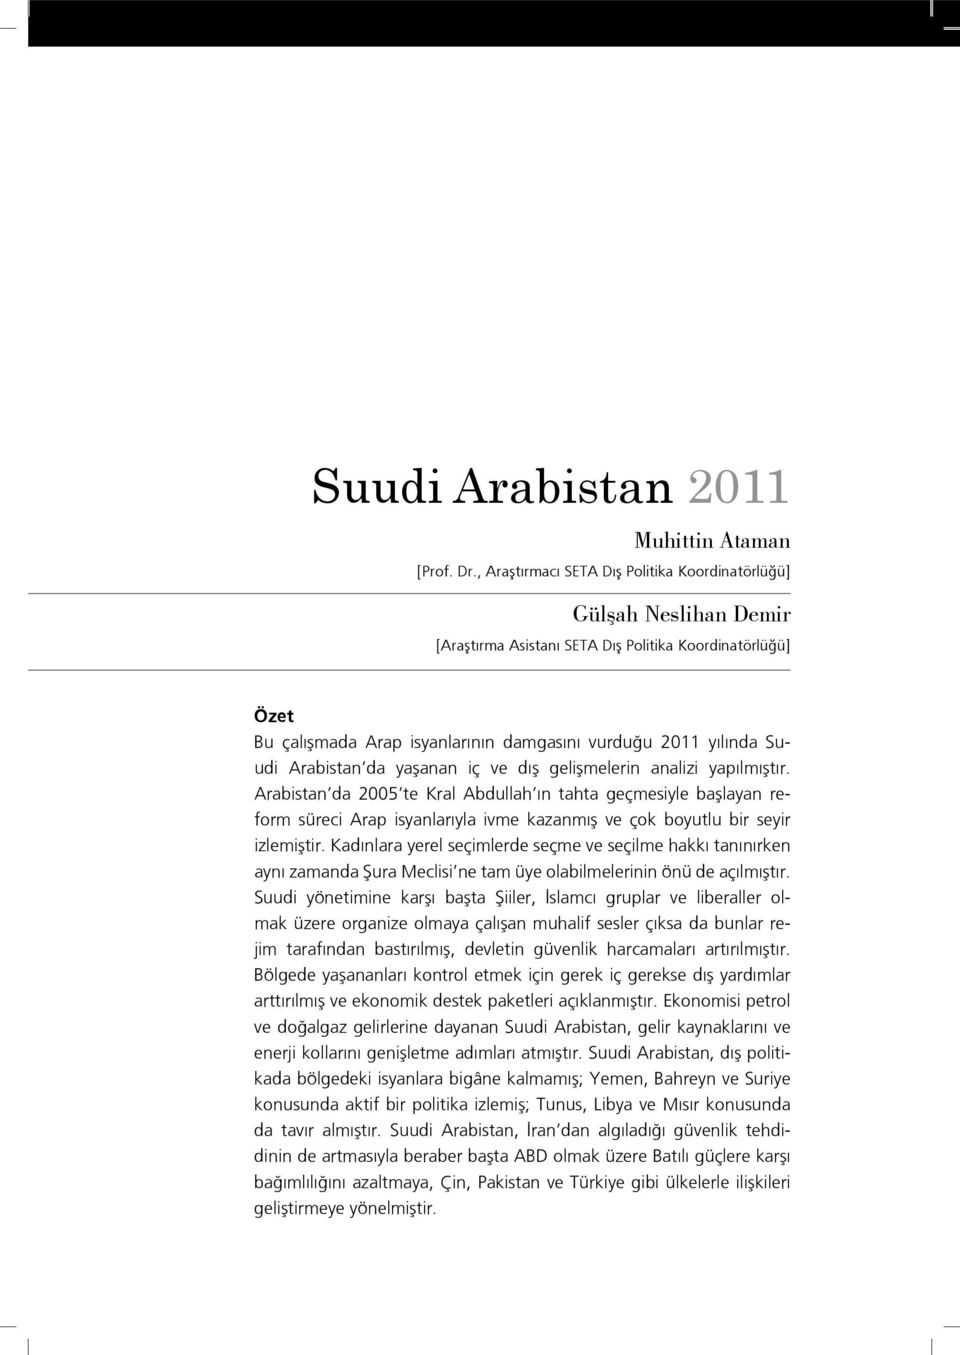 Arabistan da yaşanan iç ve dış gelişmelerin analizi yapılmıştır.